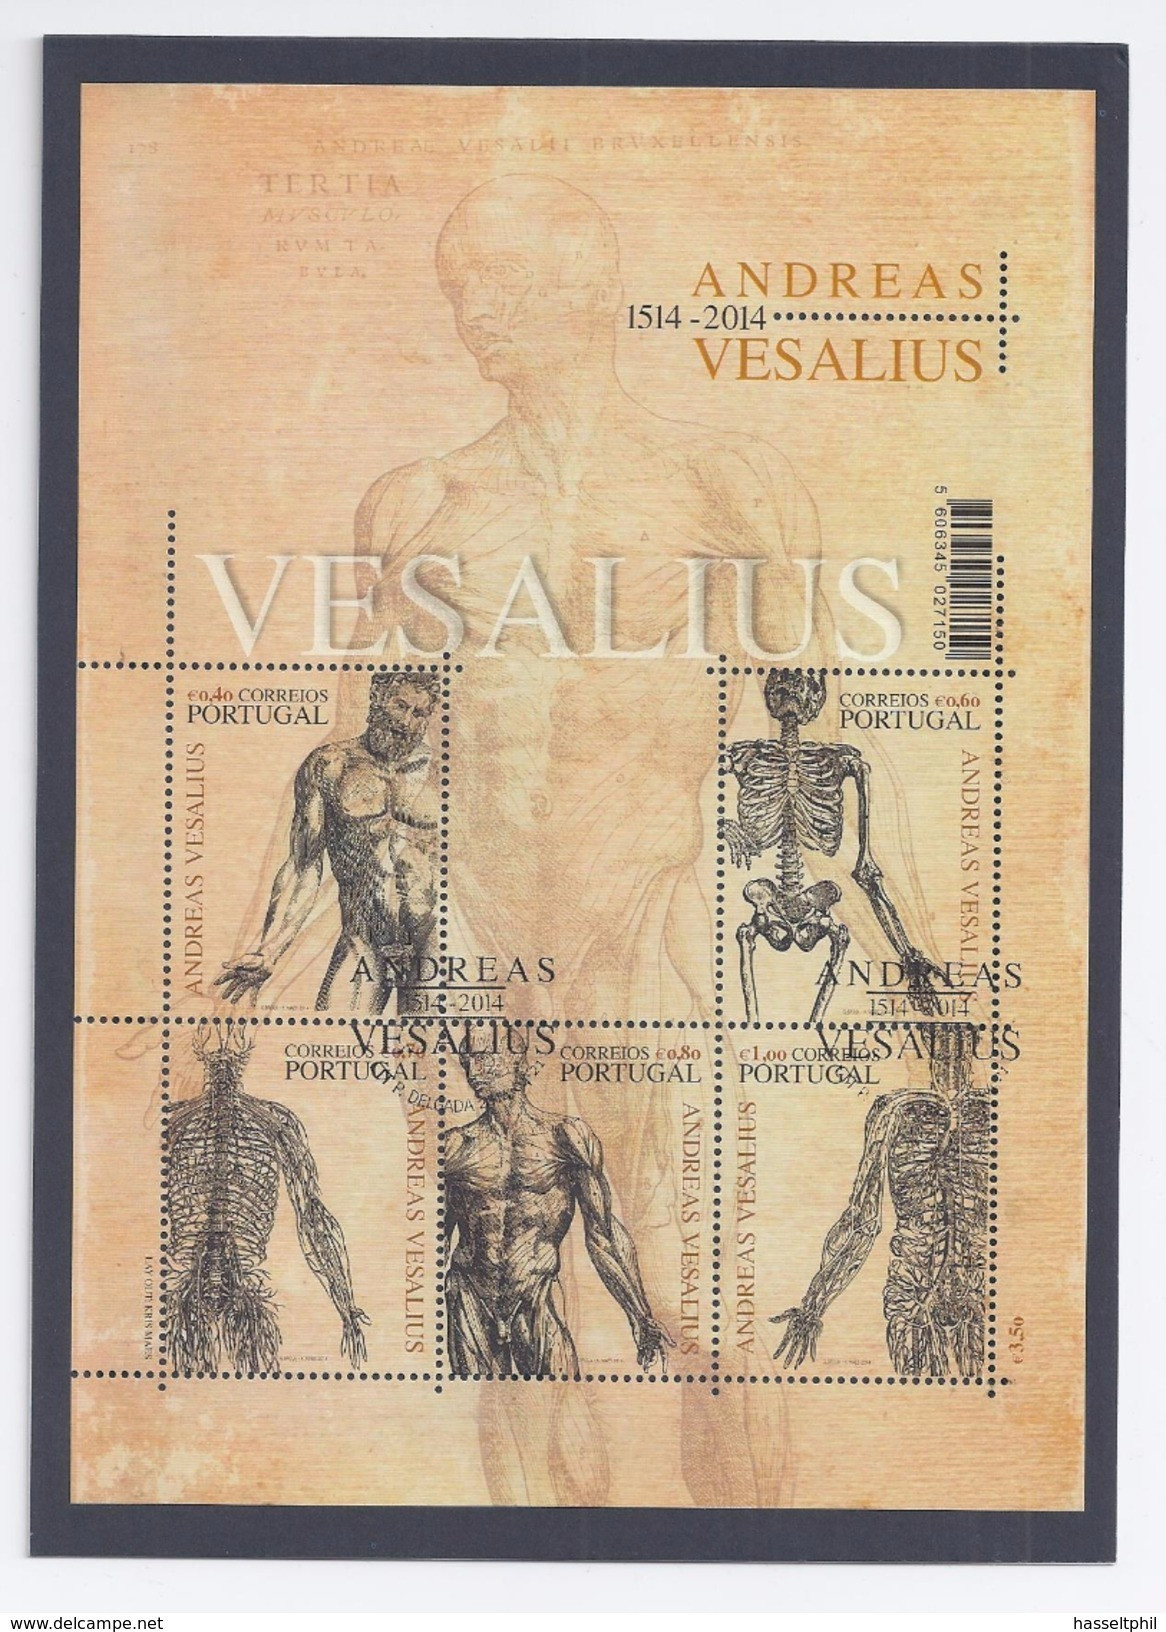 Belgie - Belgique 4416HK Herdenkingskaart - Carte Souvenir 2014 - 500 Jaar Andreas Vesalius - Herdenkingskaarten - Gezamelijke Uitgaven [HK]